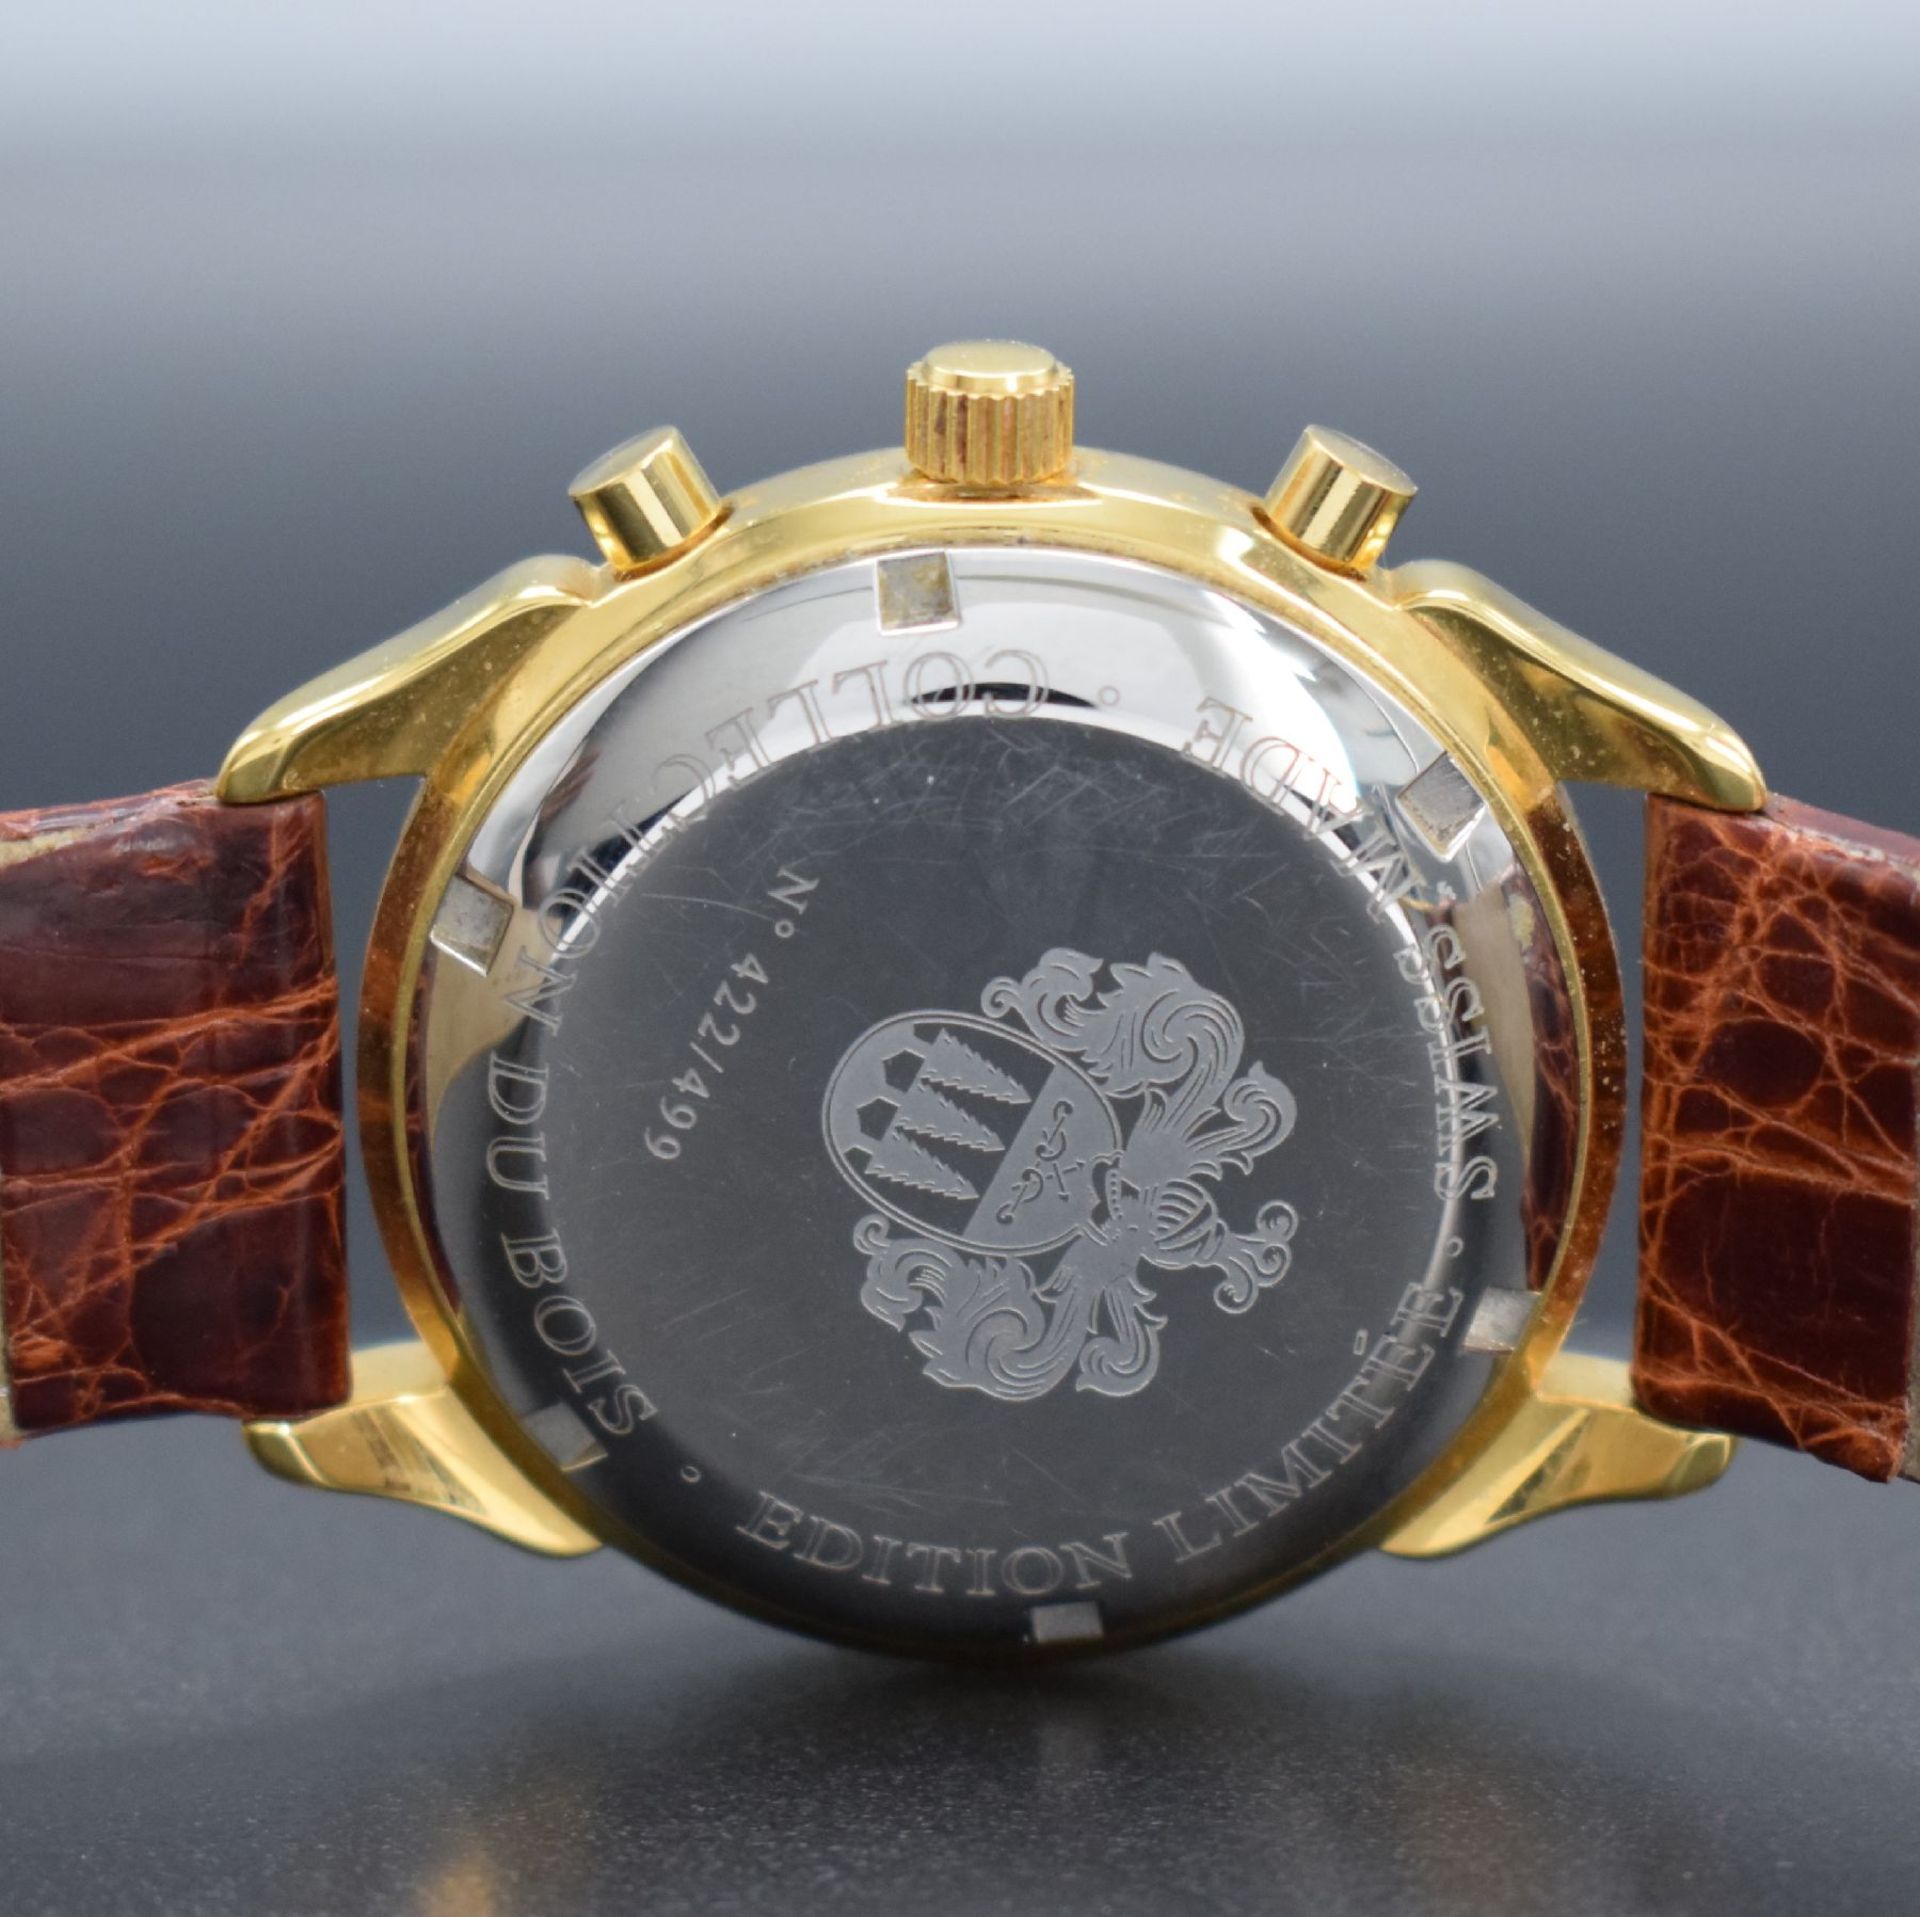 DU BOIS limitierter Armbandchronograph mit Mondphase & - Image 5 of 7